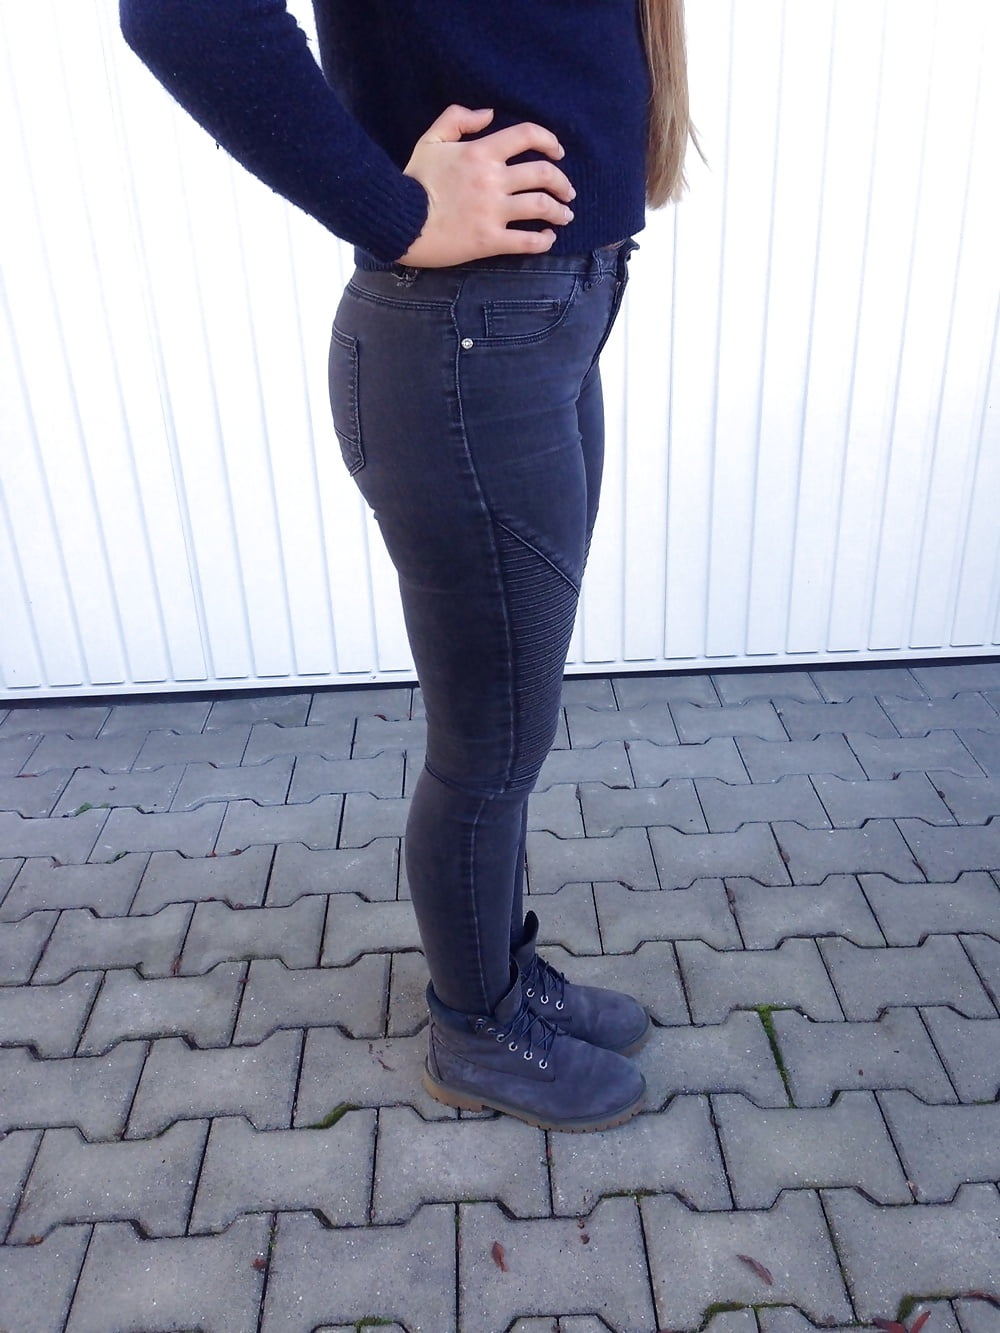 german girl in hot leggings annamaria (5/15)